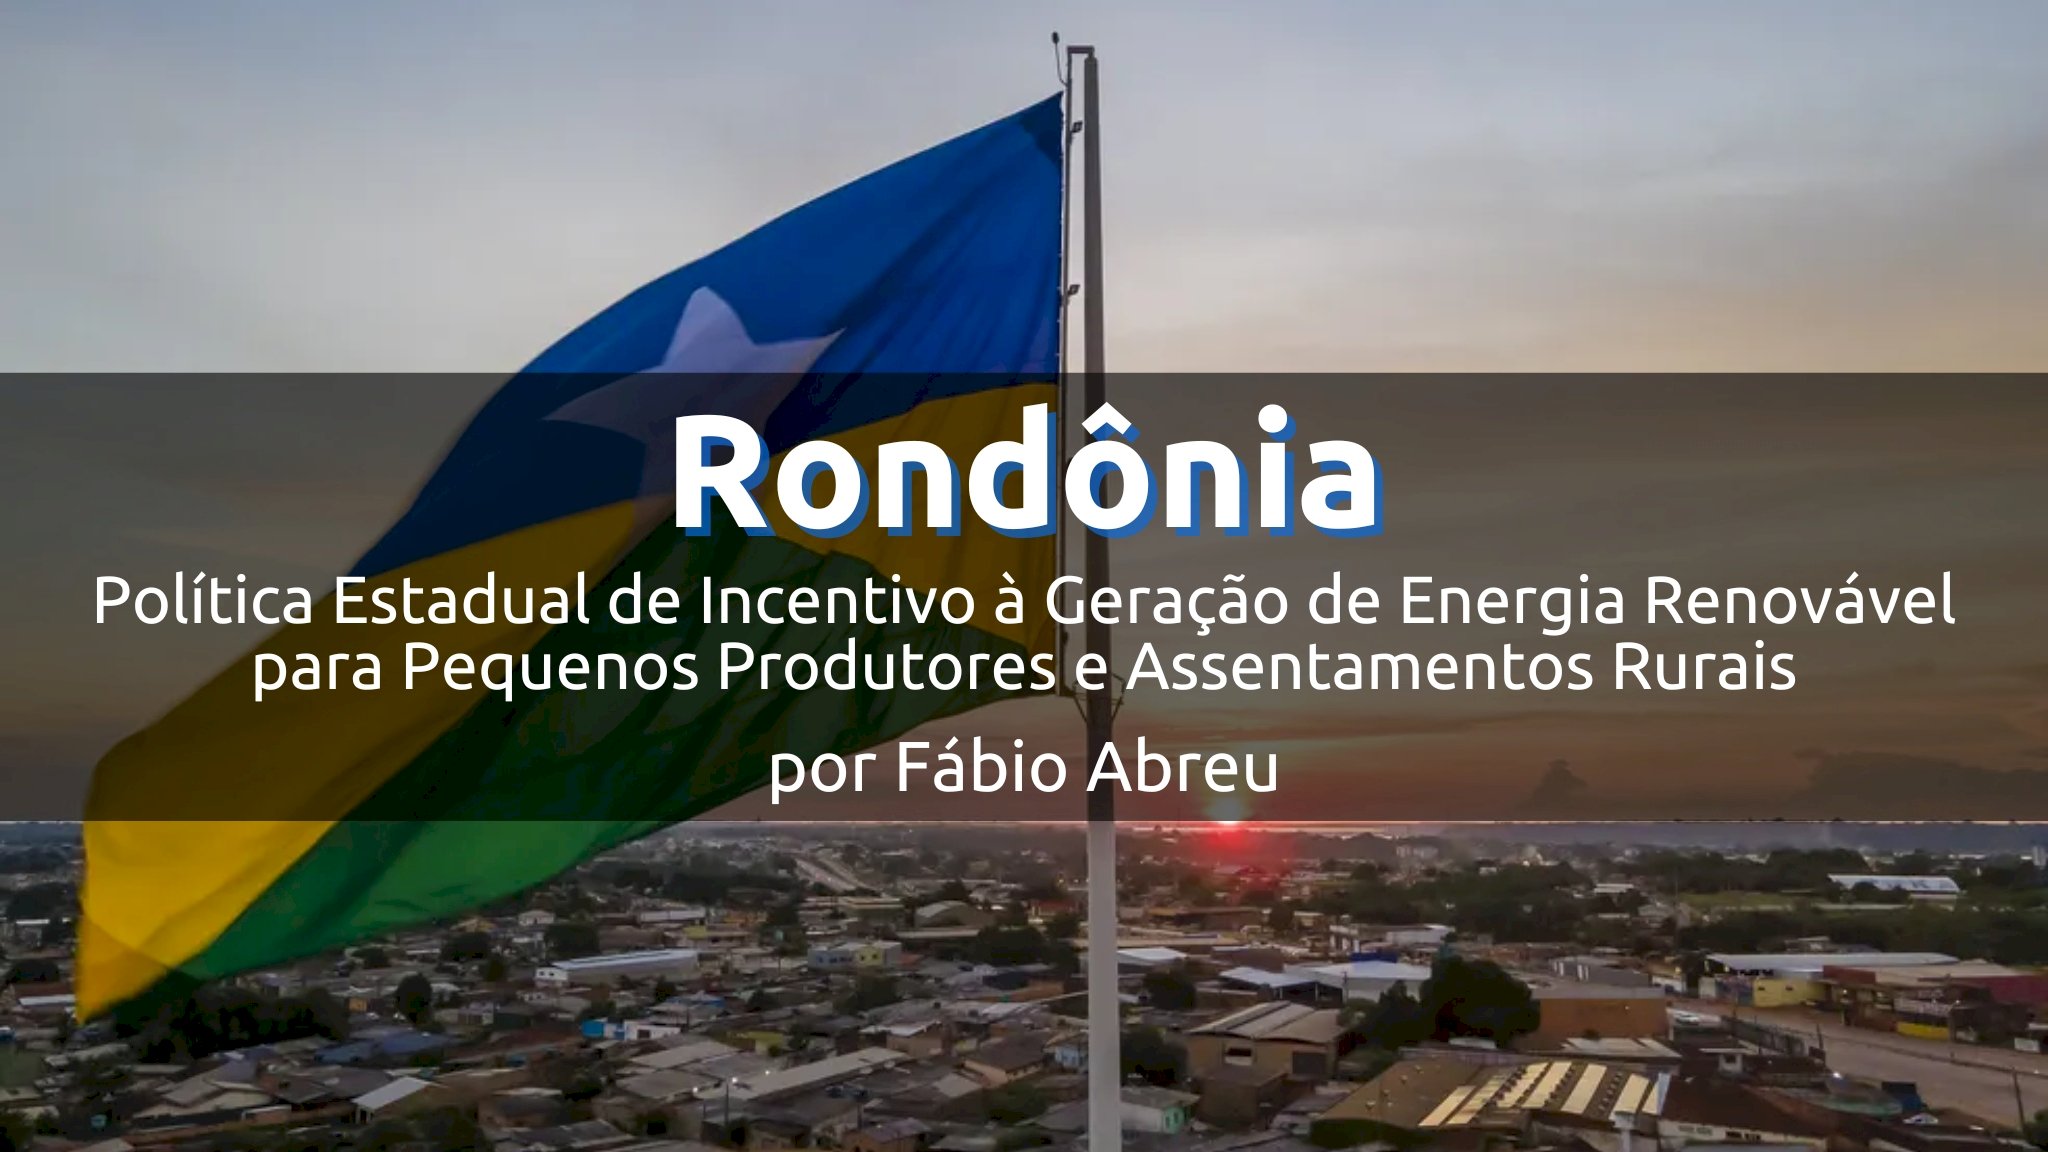 Rondônia e a Política Estadual de Incentivo à Energia Renovável